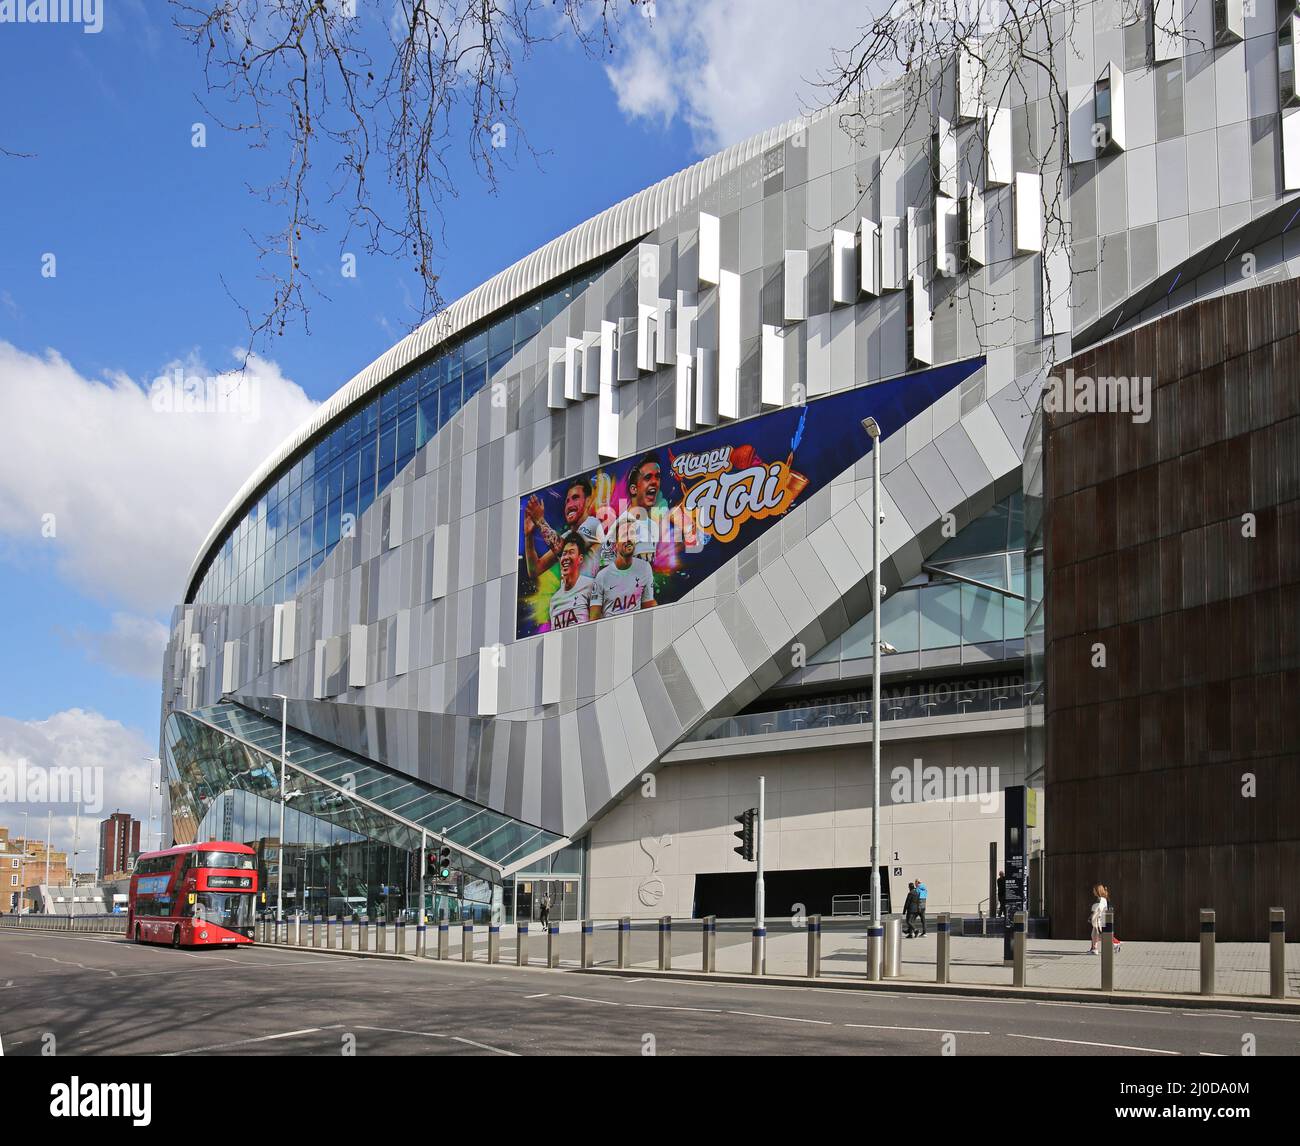 Le nouveau stade de Tottenham Hotspur, club de football britannique de première division, à White Hart Lane, Londres. Conçu par des architectes très peuplés, ouvert en 2019 Banque D'Images